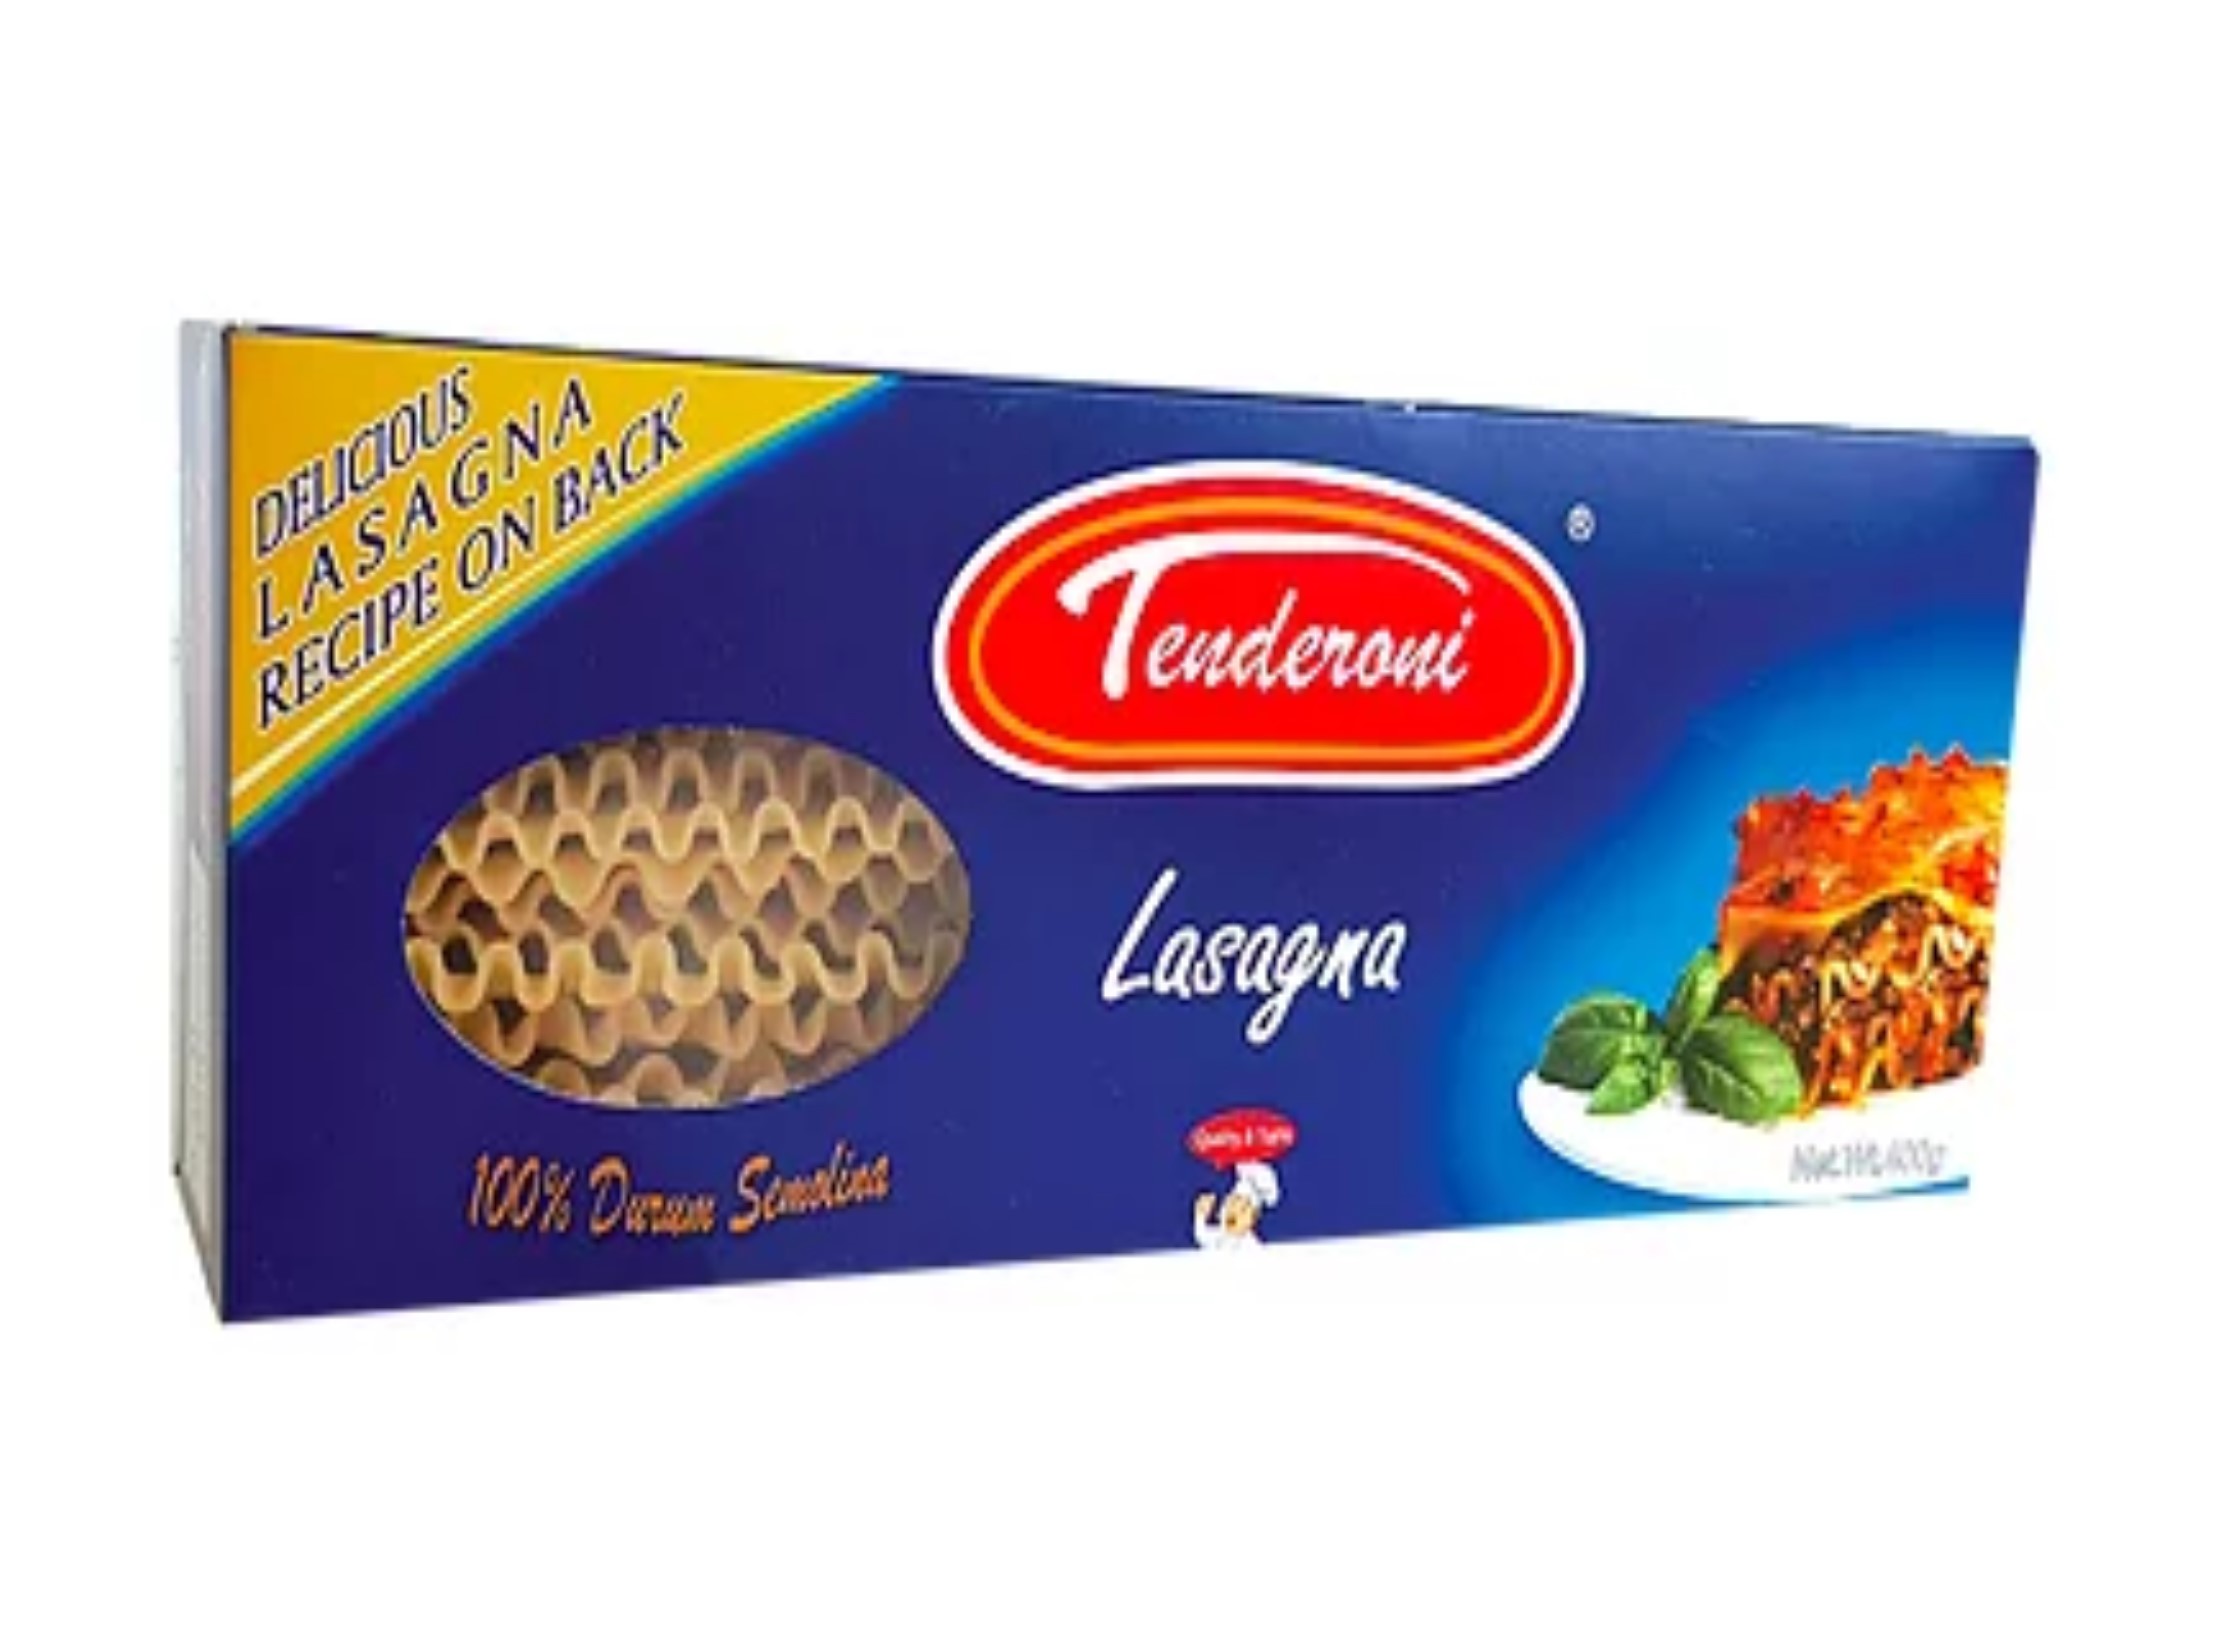 Tenderoni Lasagna 400G